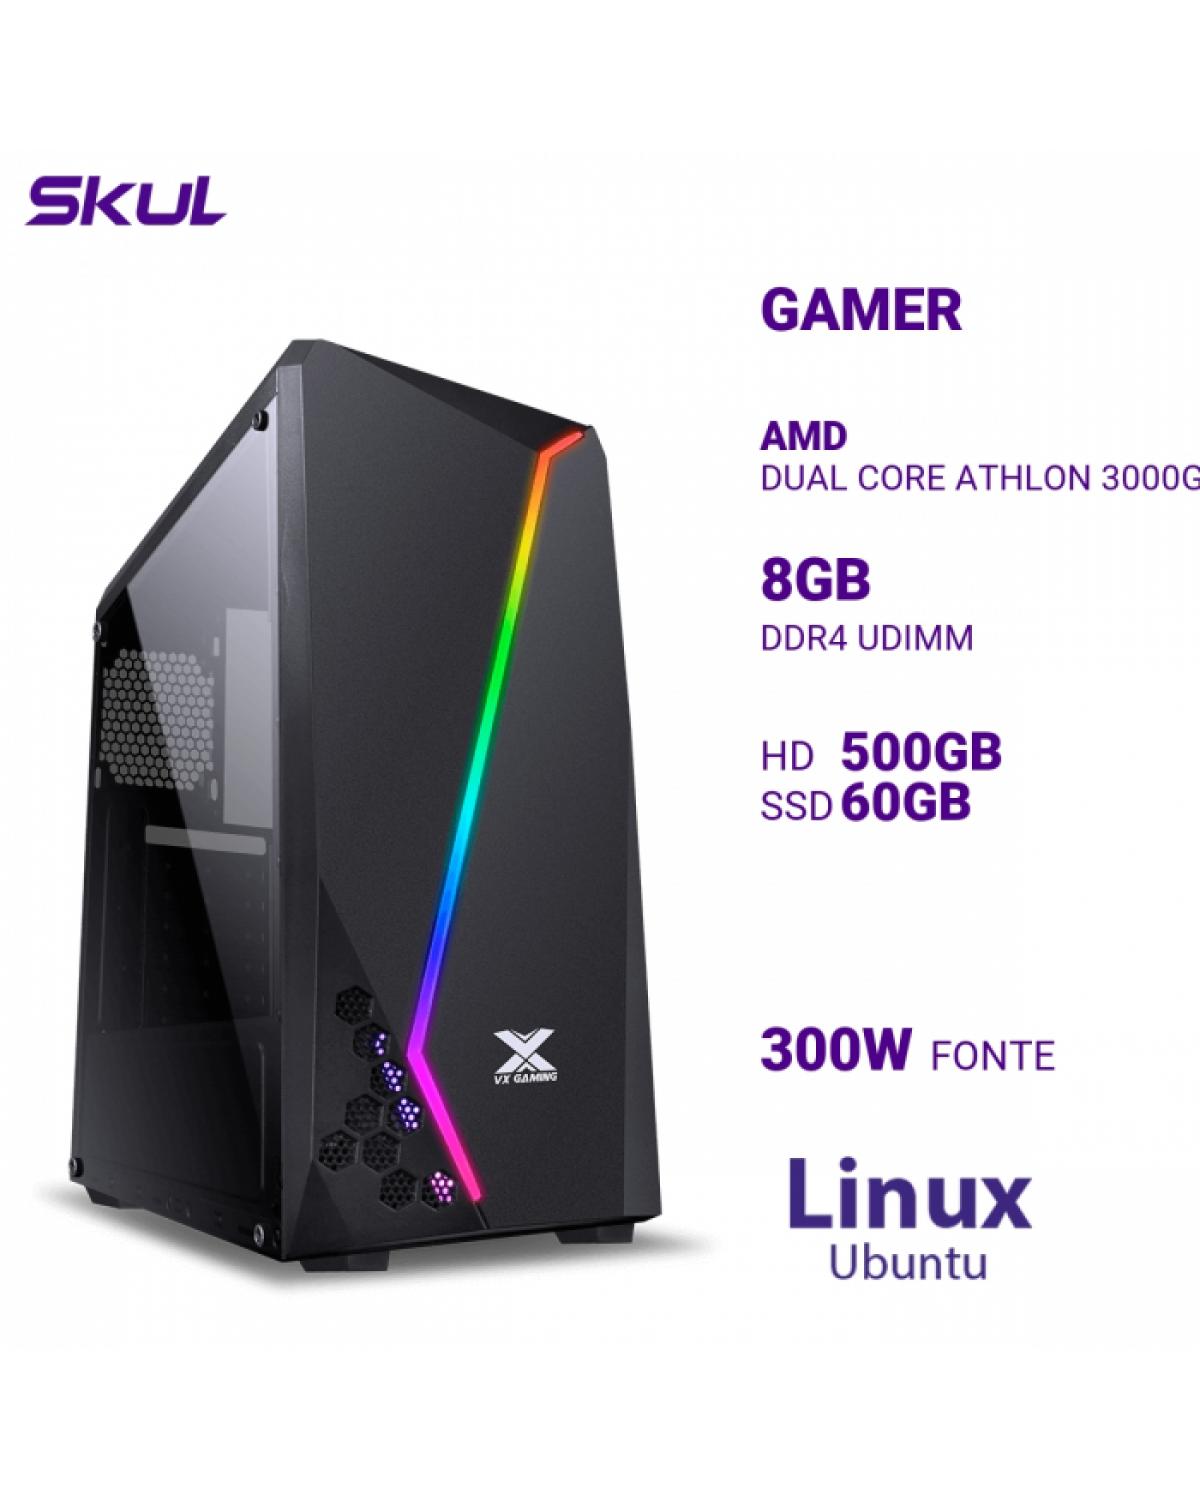 COMPUTADOR GAMER 1000 DUAL CORE ATHLON 3000G 3.50GHZ MEM 8GB DDR4 HD 500GB SSD 60GB FONTE 300W LINUX